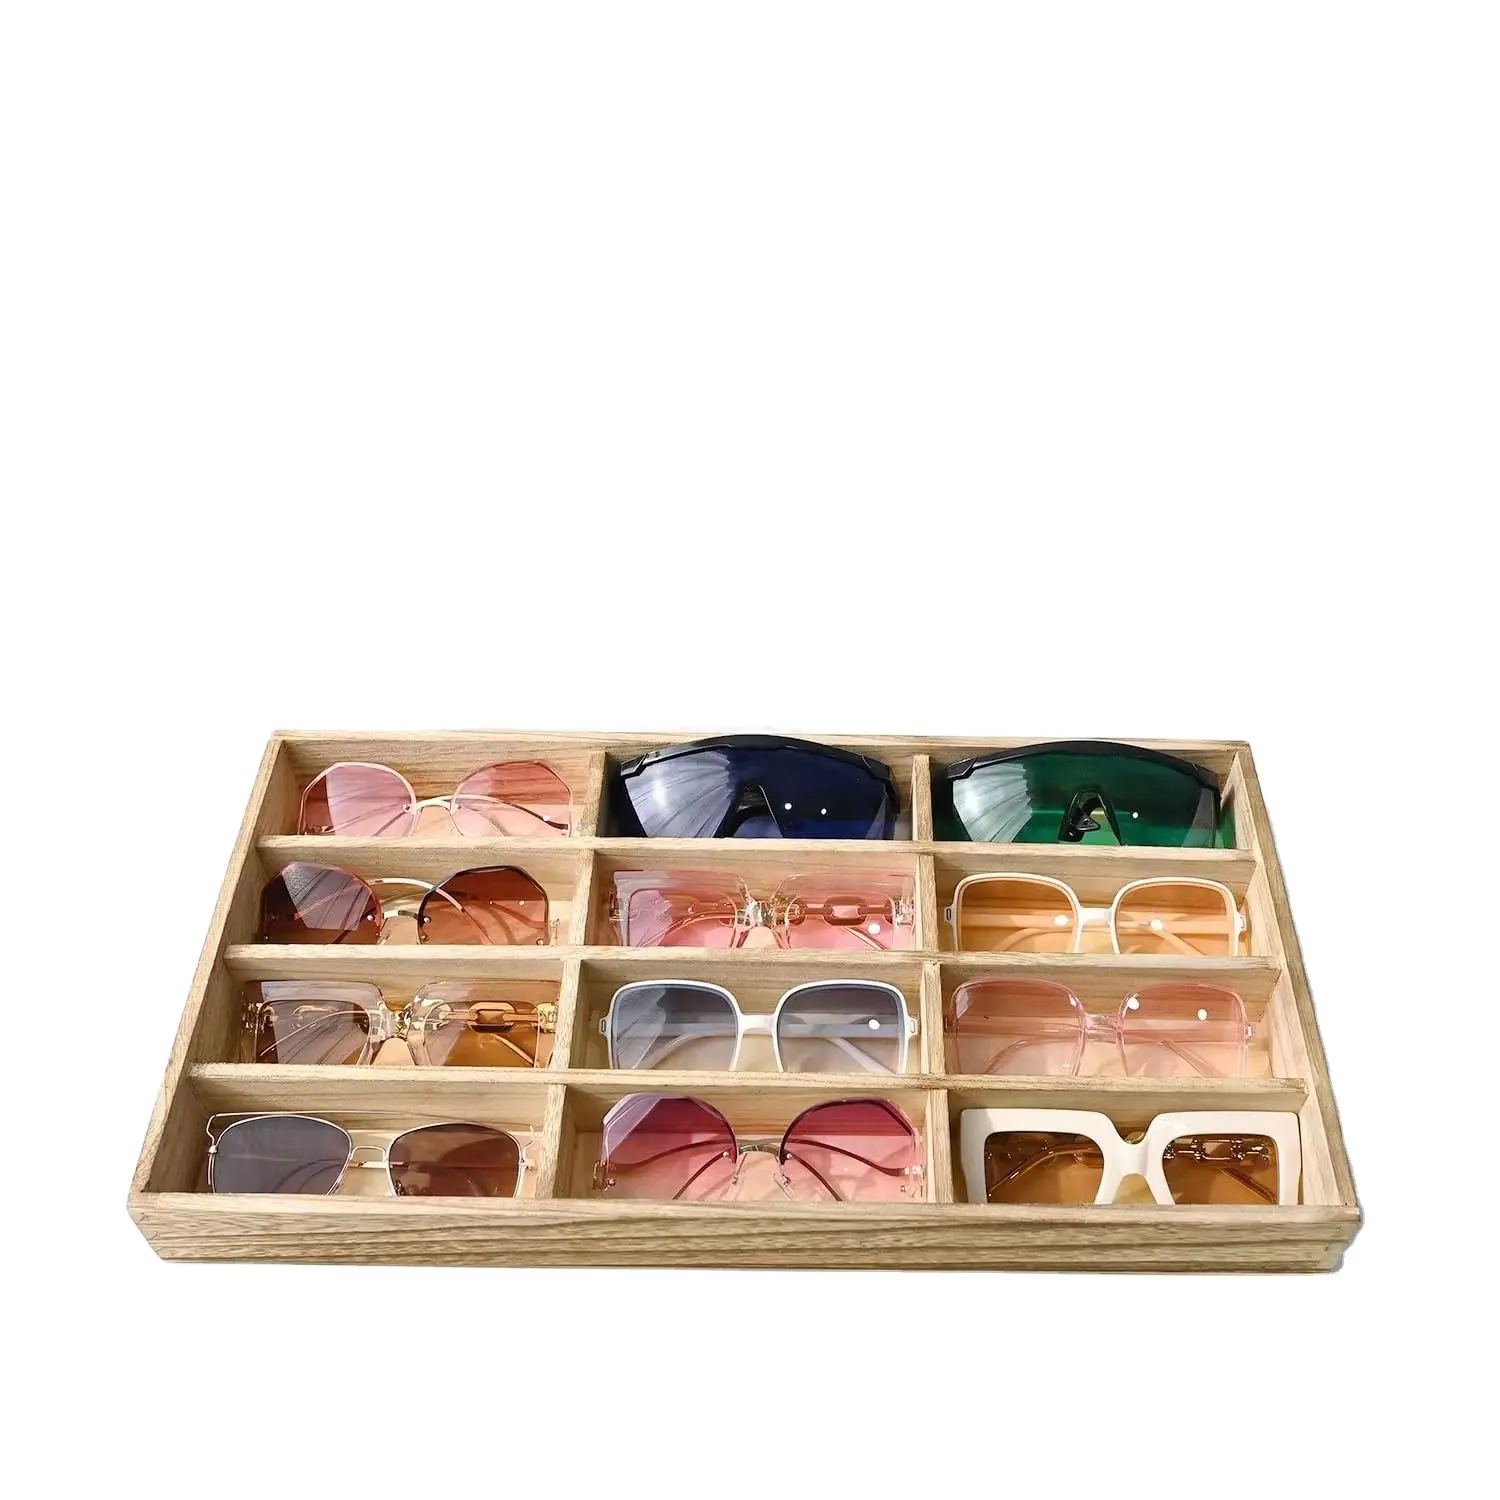 صندوق خشبي مفتوح علوي لحفظ النظارات الصينية وصندوق عرض صغير للملابس الشمسية به 12 حجرة